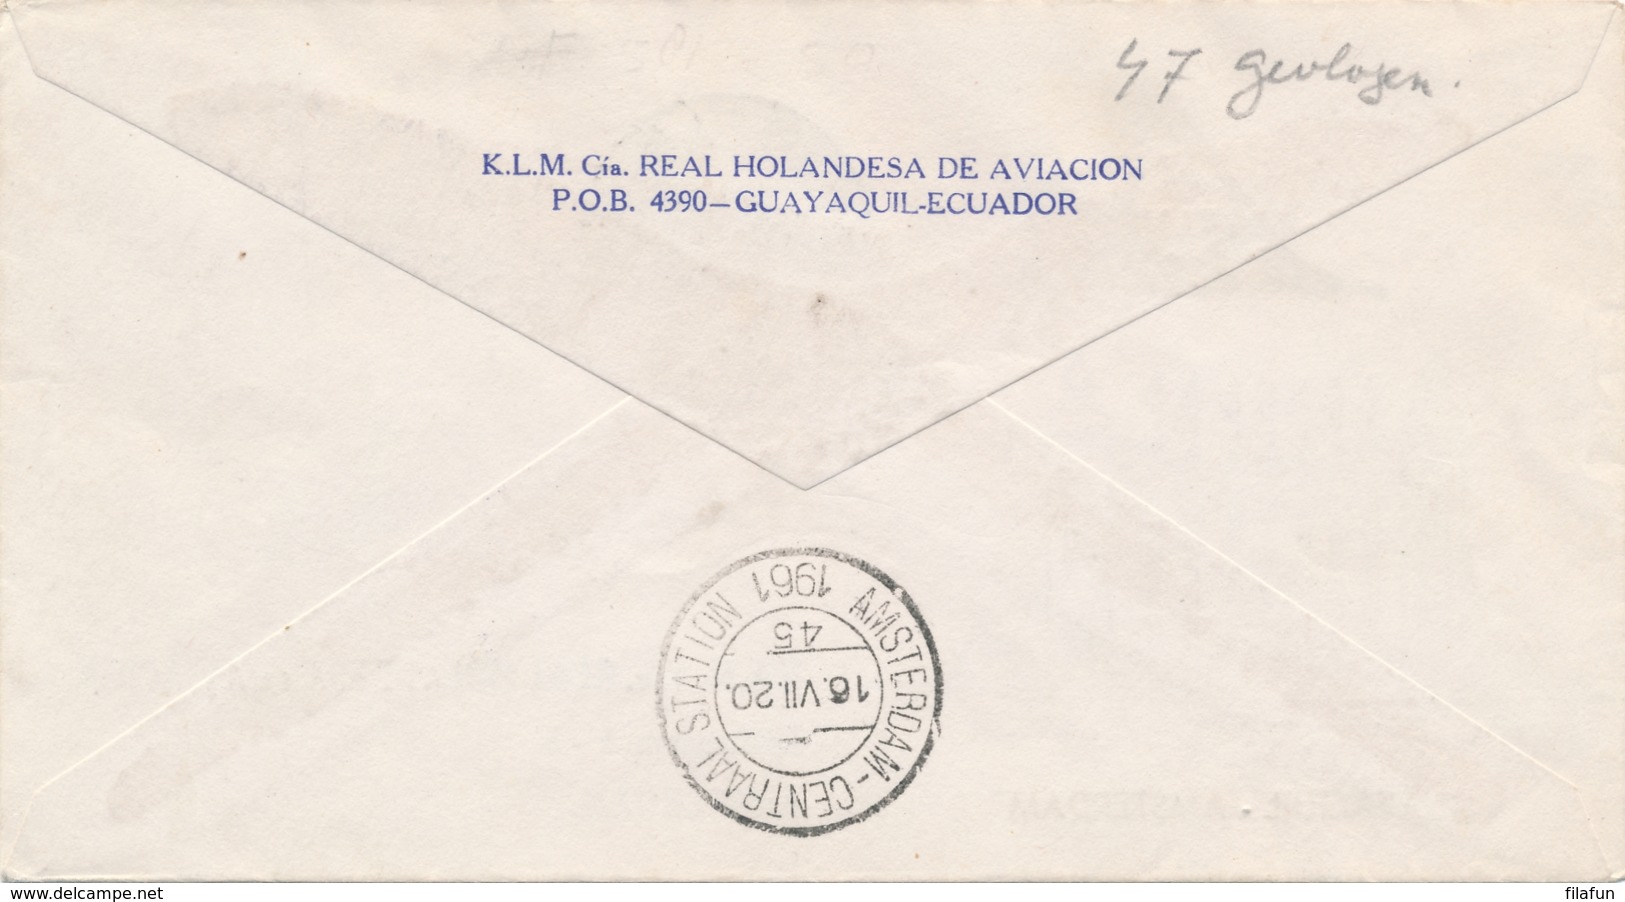 Ecuador / Nederland - 1961 - First Flight KLM Guayaquil - Amsterdam - Luchtpost